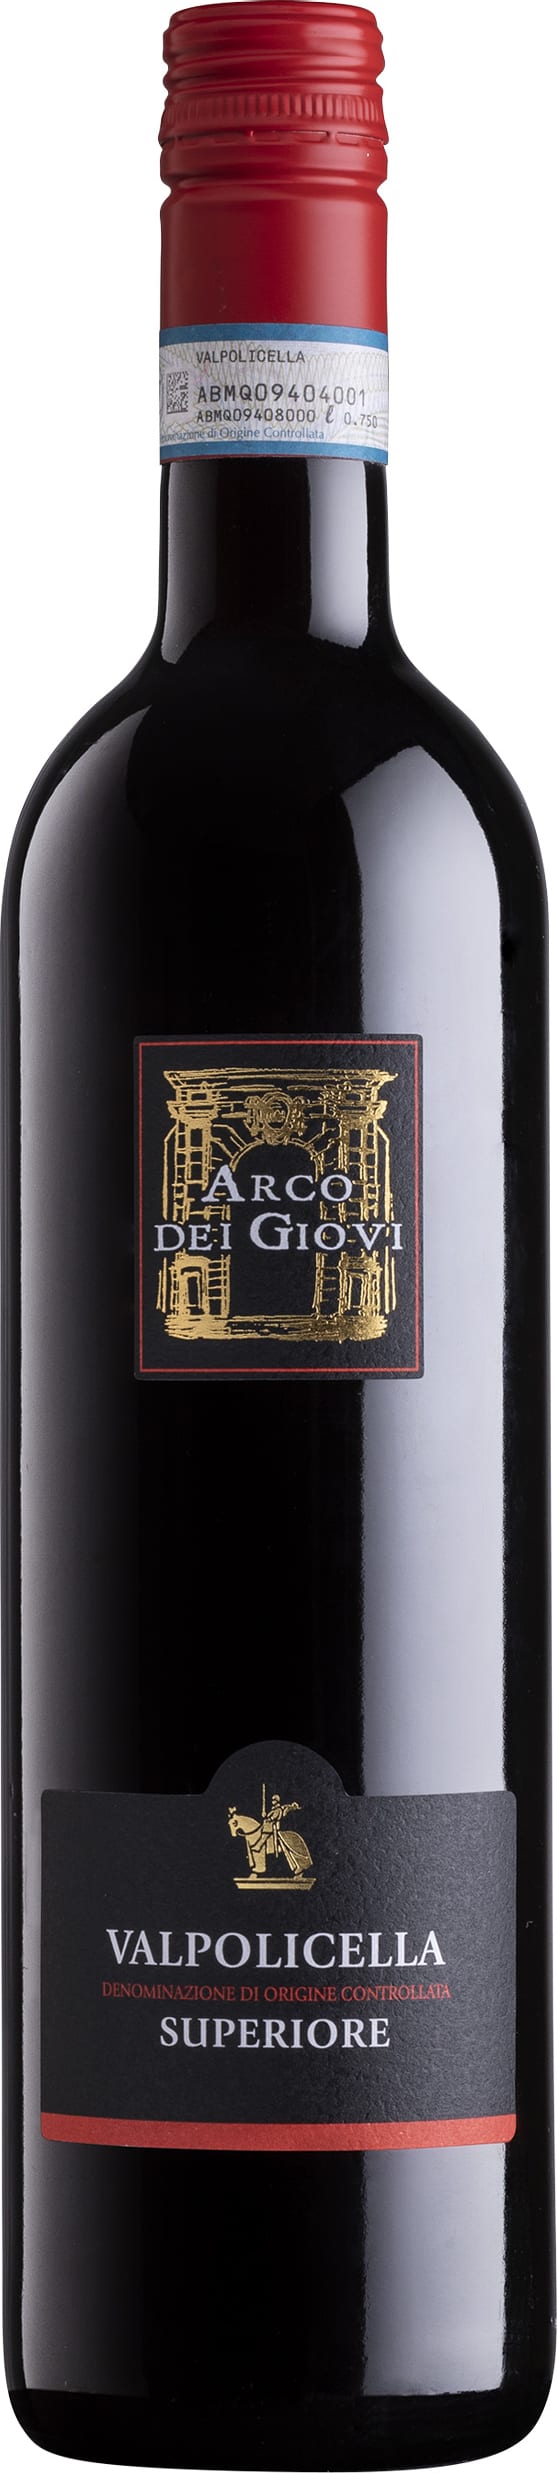 Arco dei Giovi Valpolicella Superiore 2022 75cl - Buy Arco dei Giovi Wines from GREAT WINES DIRECT wine shop